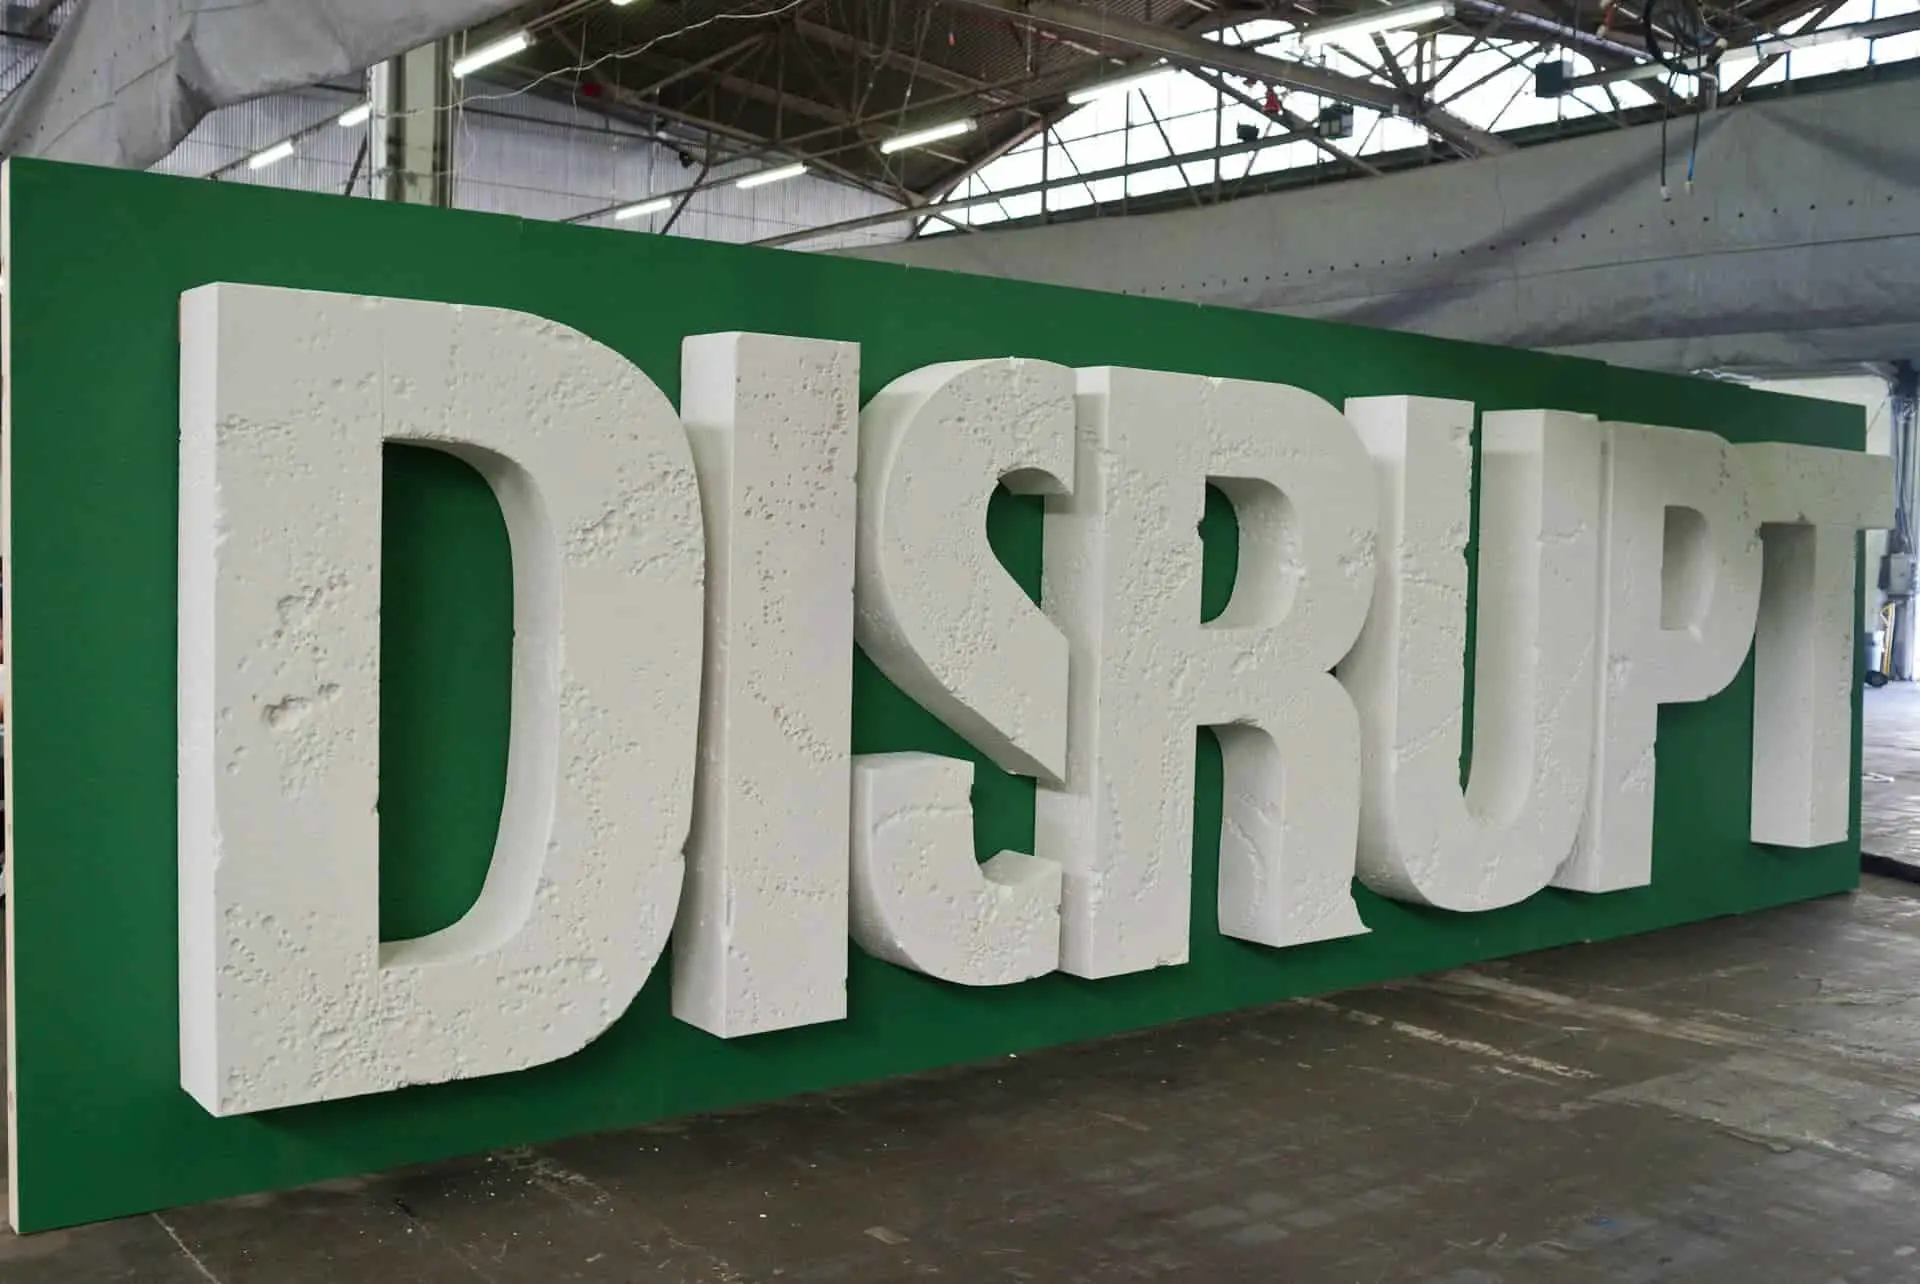 large Disrupt lettering